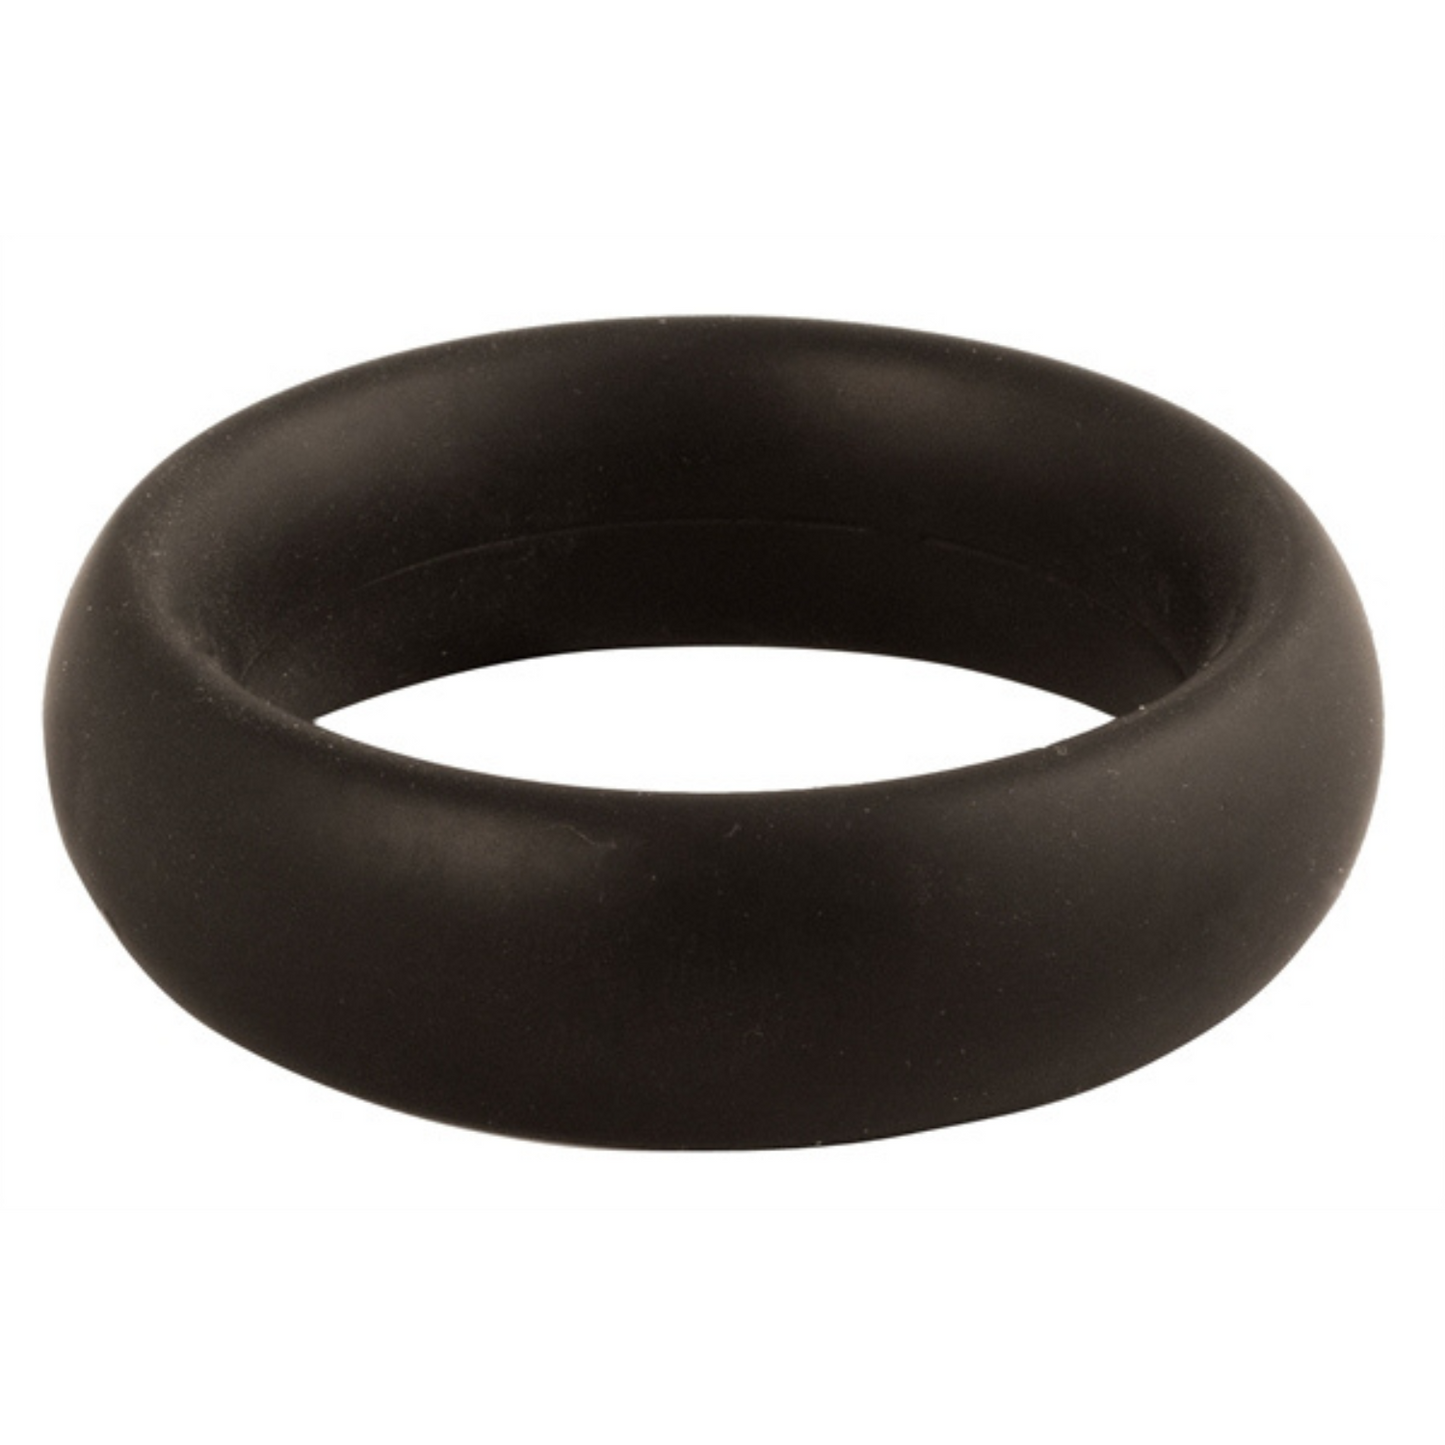 Zwarte donut cockring met een diameter van 45 mm. Ontworpen door Mister B voor gay mannen en te koop bij Flavourez.